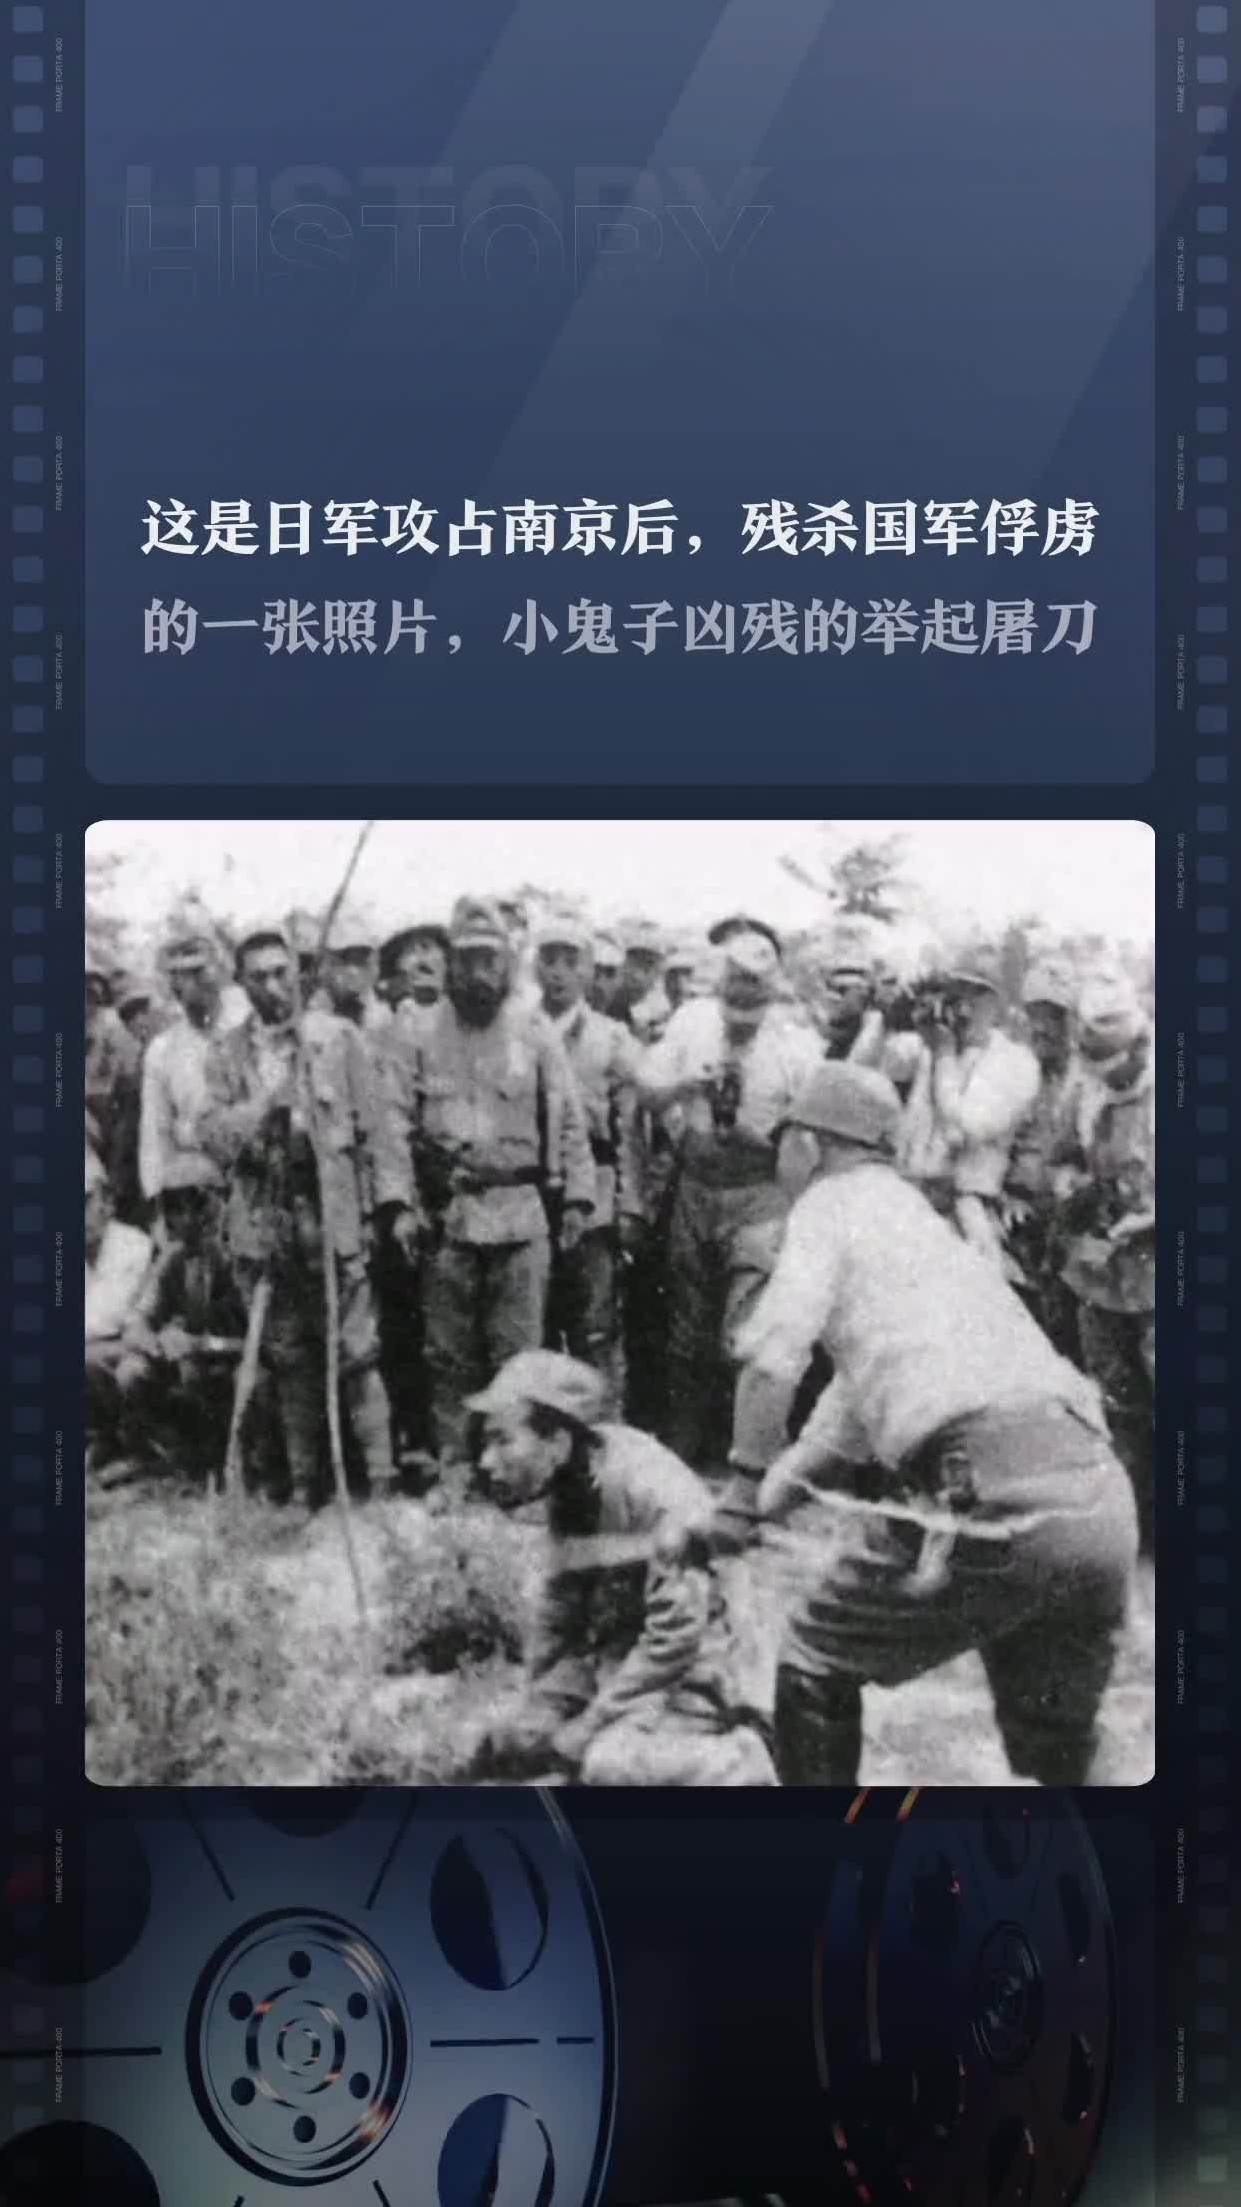 这是日军攻占南京后残杀国军俘虏的一张照片小鬼子凶残的举起屠刀手起